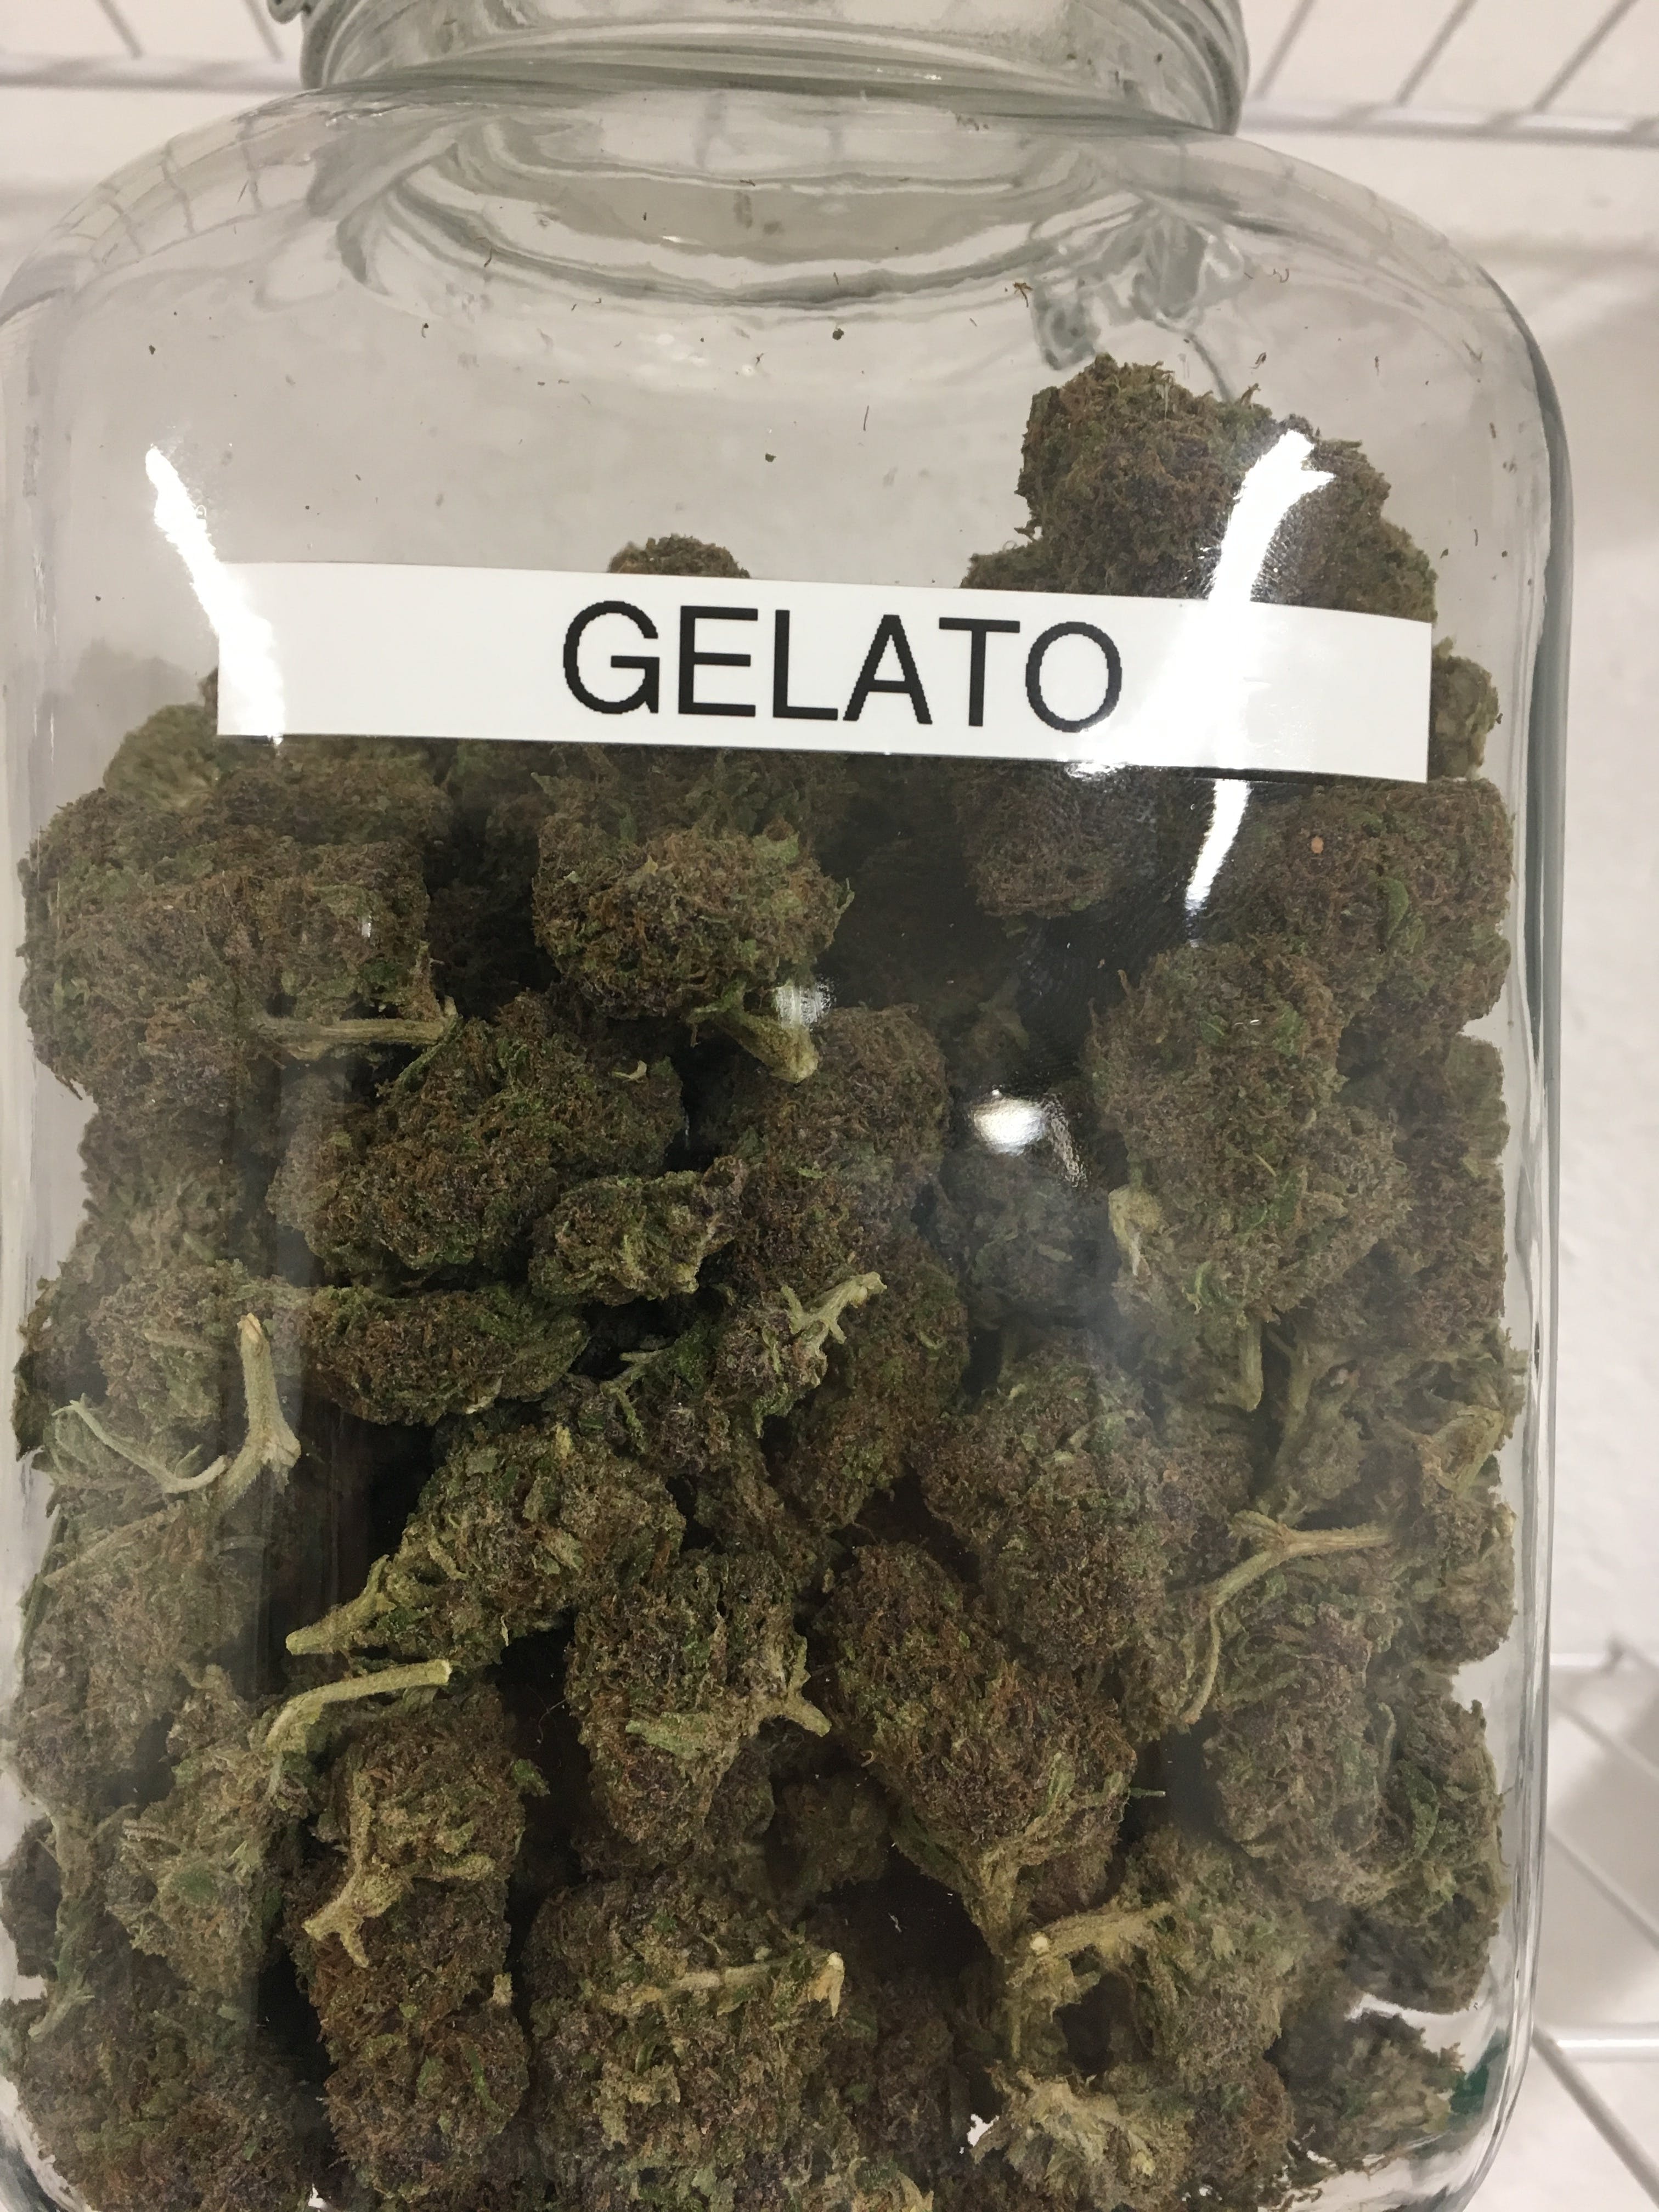 marijuana-dispensaries-stonies-llc-in-north-bend-gelato